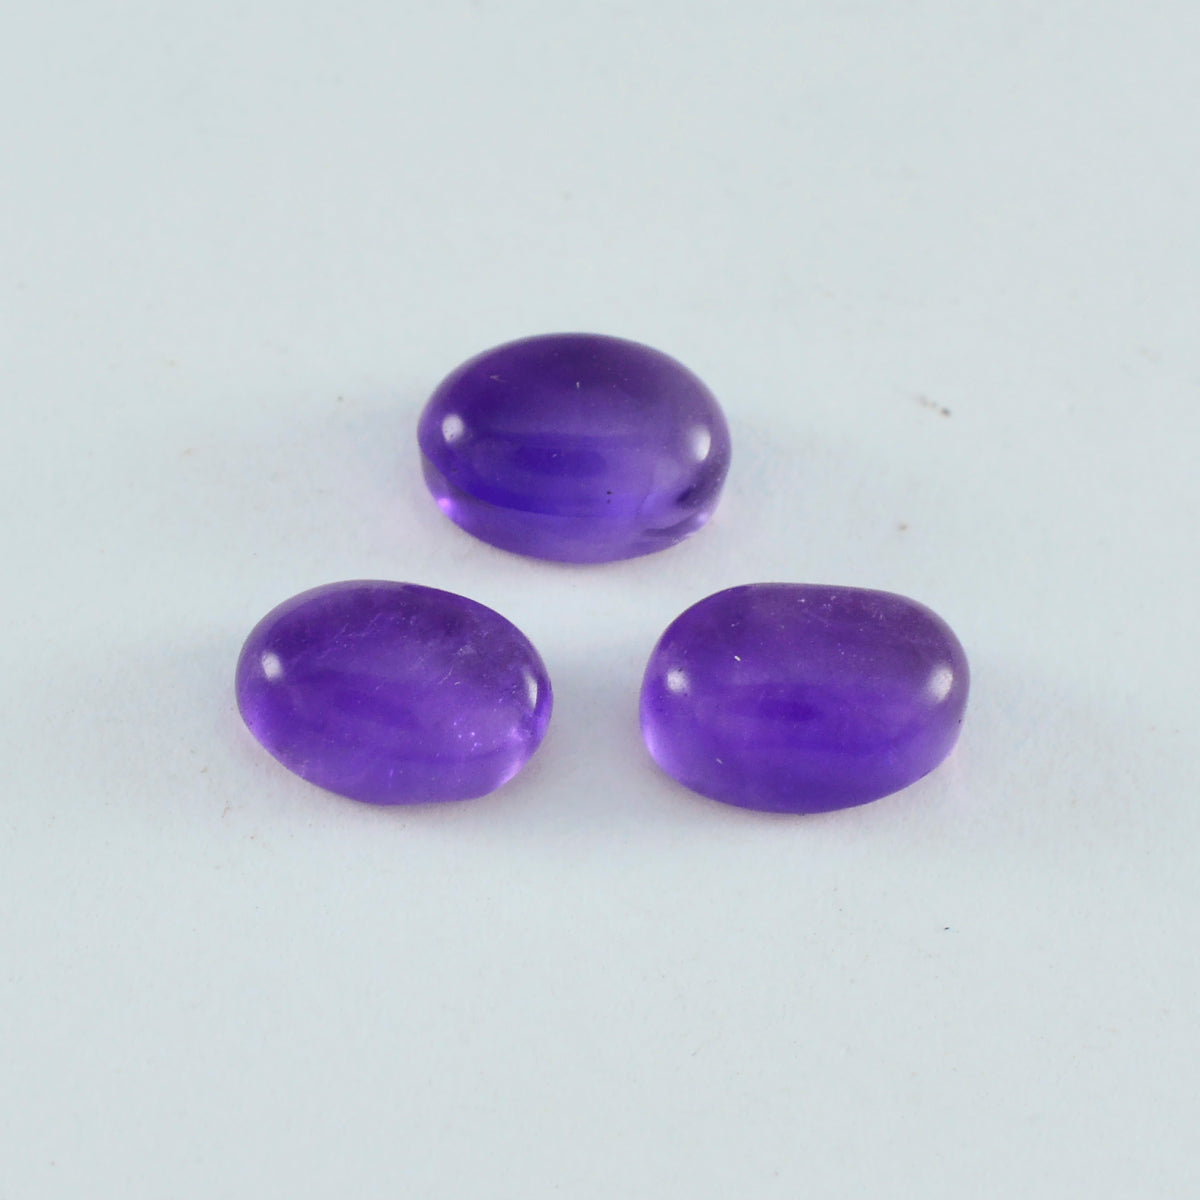 Riyogems 1 Stück lila Amethyst-Cabochon, 7 x 9 mm, ovale Form, attraktive, hochwertige lose Edelsteine